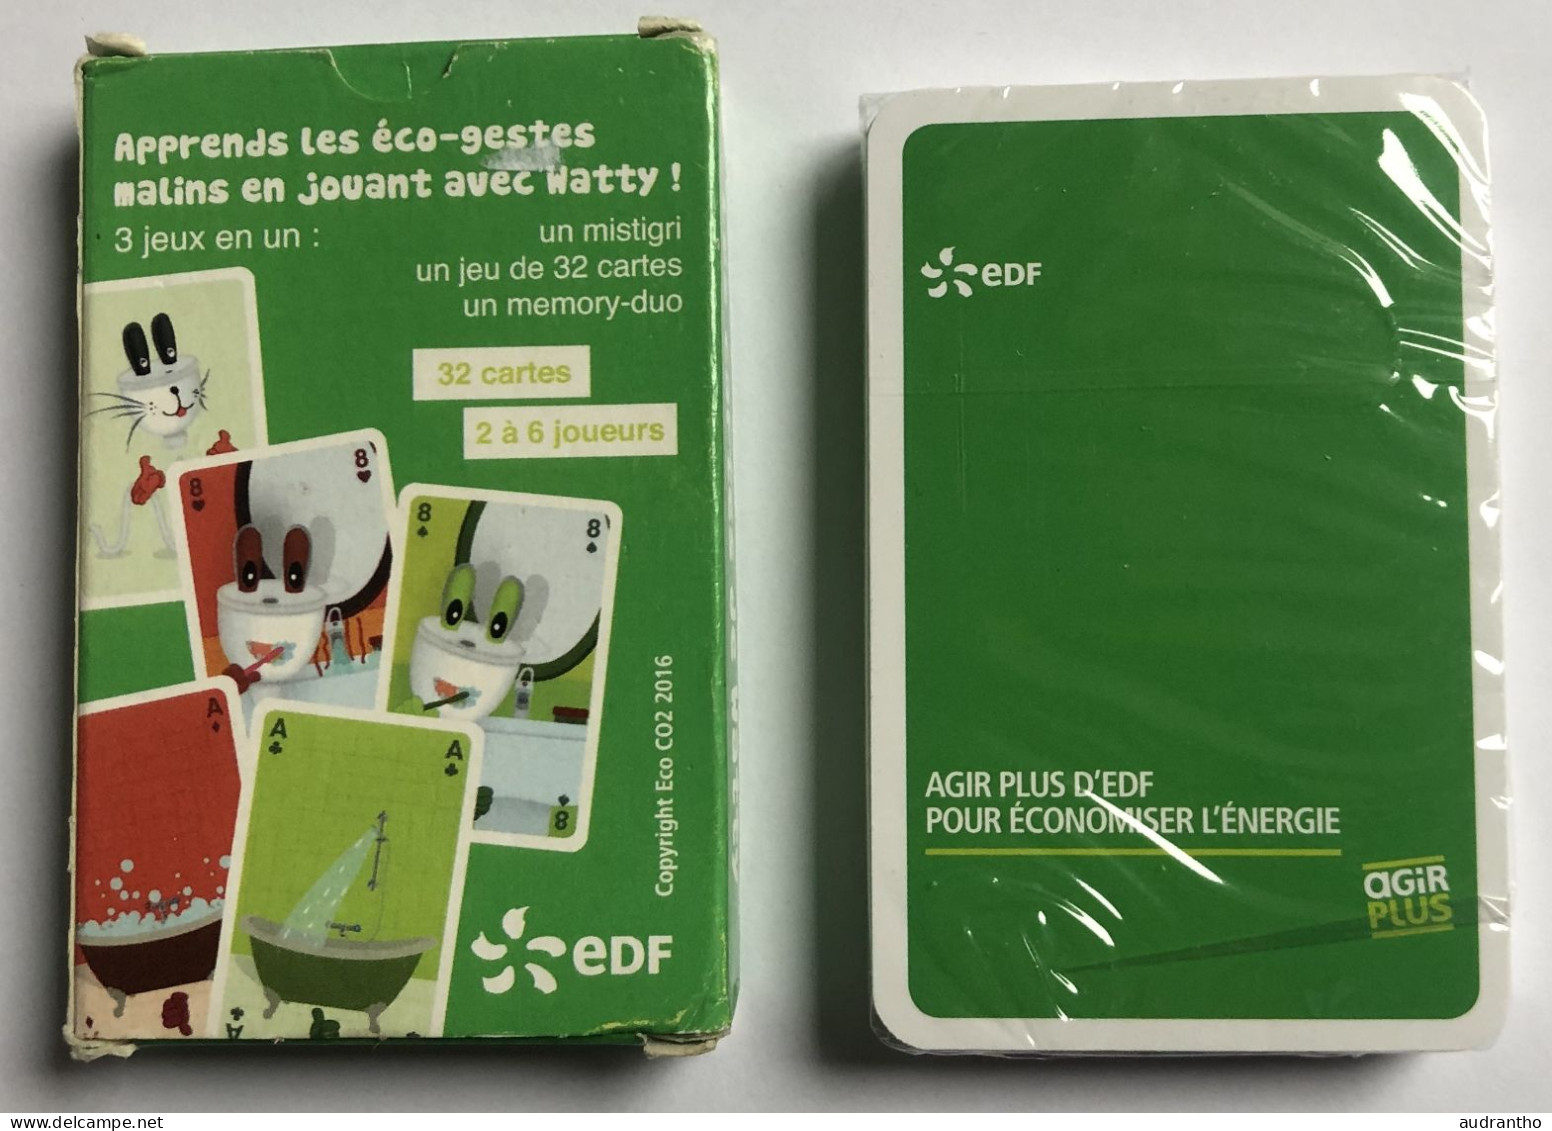 Jeu De 32 Cartes Publicitaire Rare EDF 2016 Les Cartes De Watty - Mistigri Et Memory-duo - Les éco-gestes - 32 Cartes